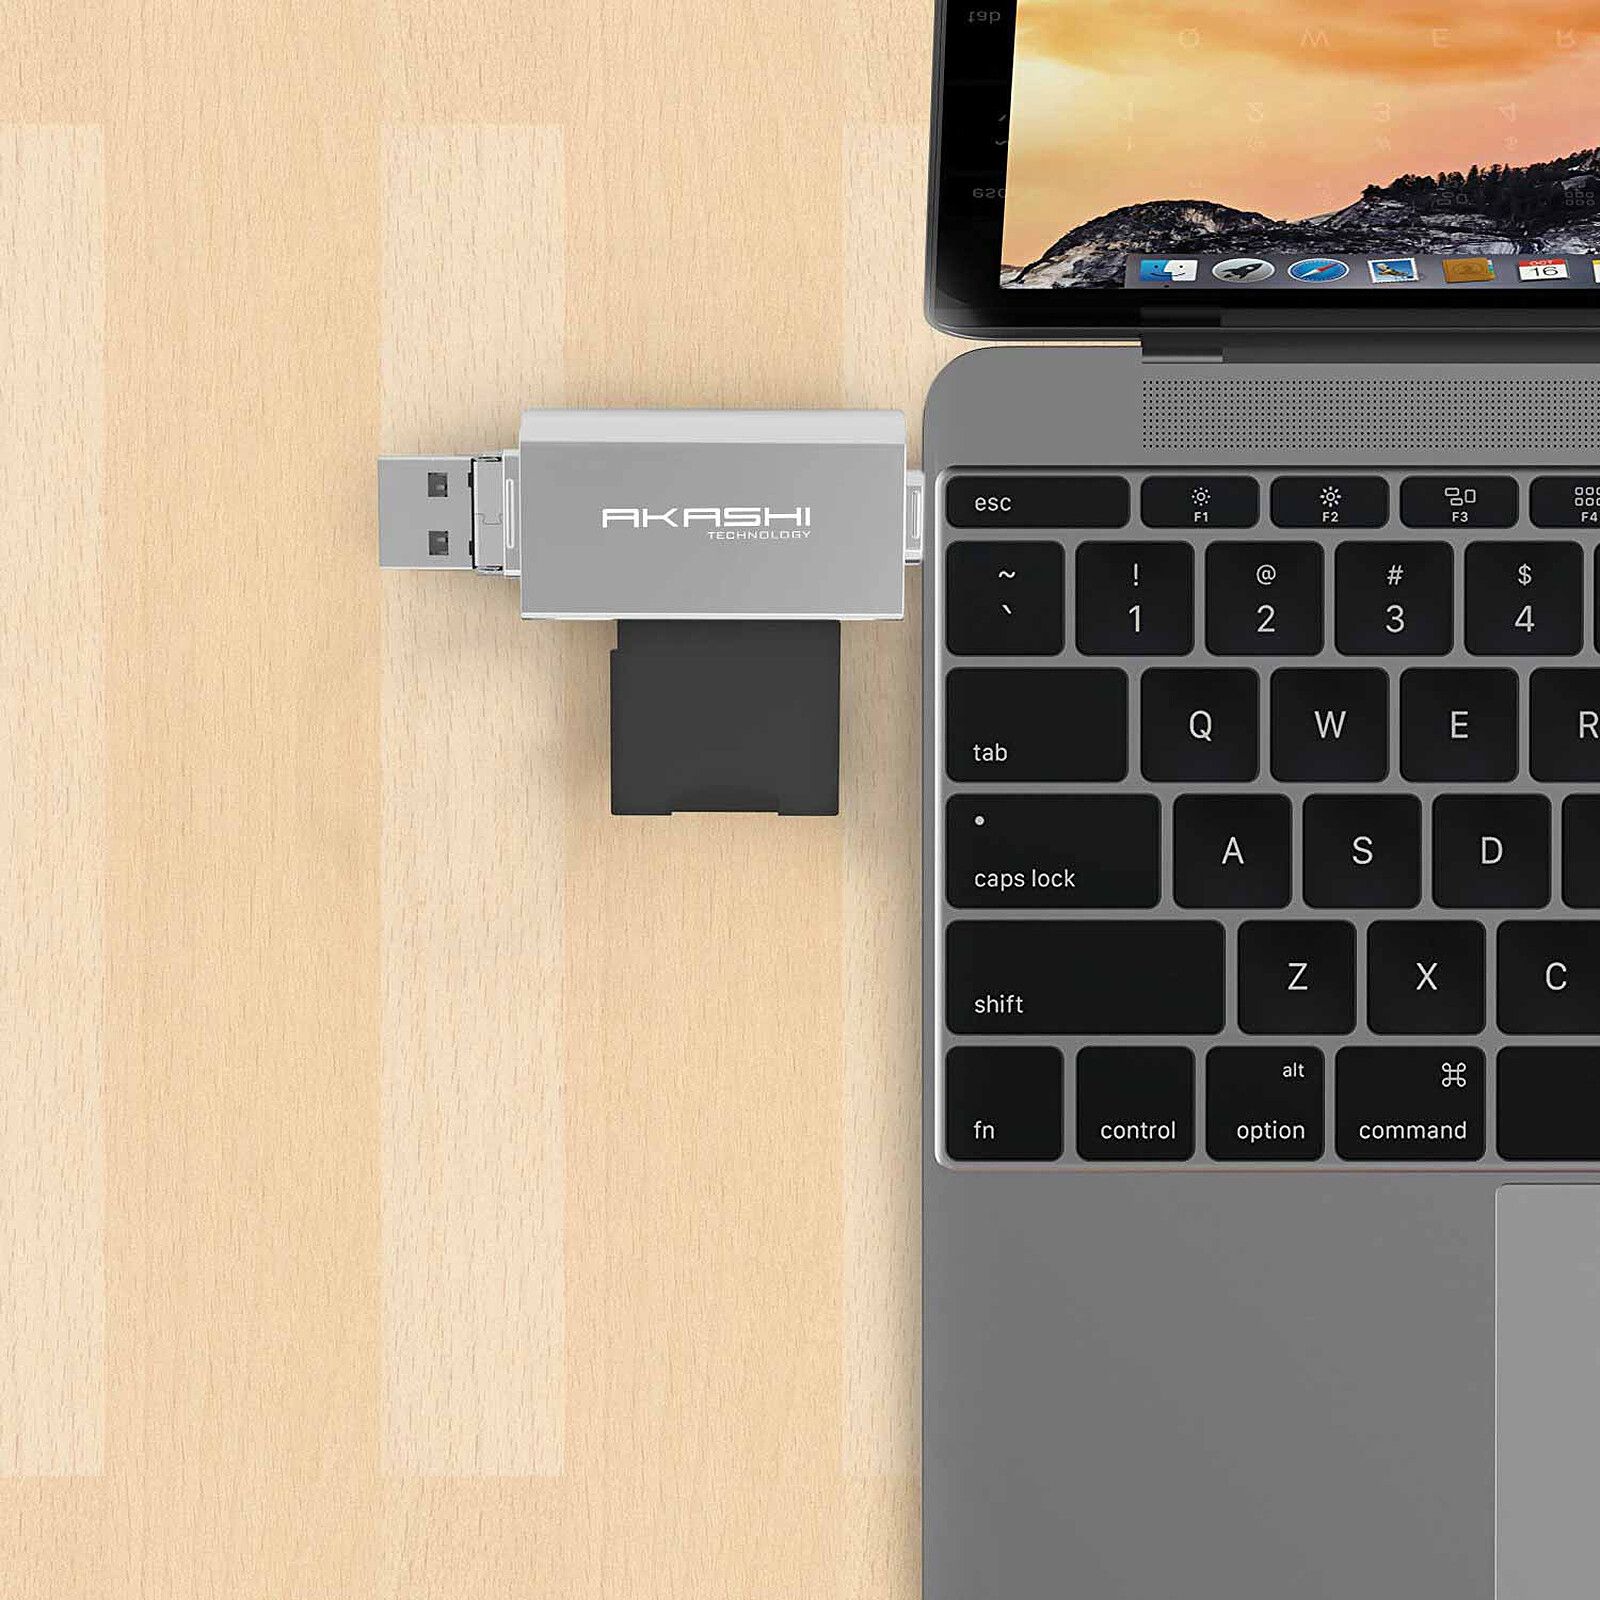 Goobay Nano lecteur de cartes sur USB 2.0 - Lecteur carte mémoire -  Garantie 3 ans LDLC